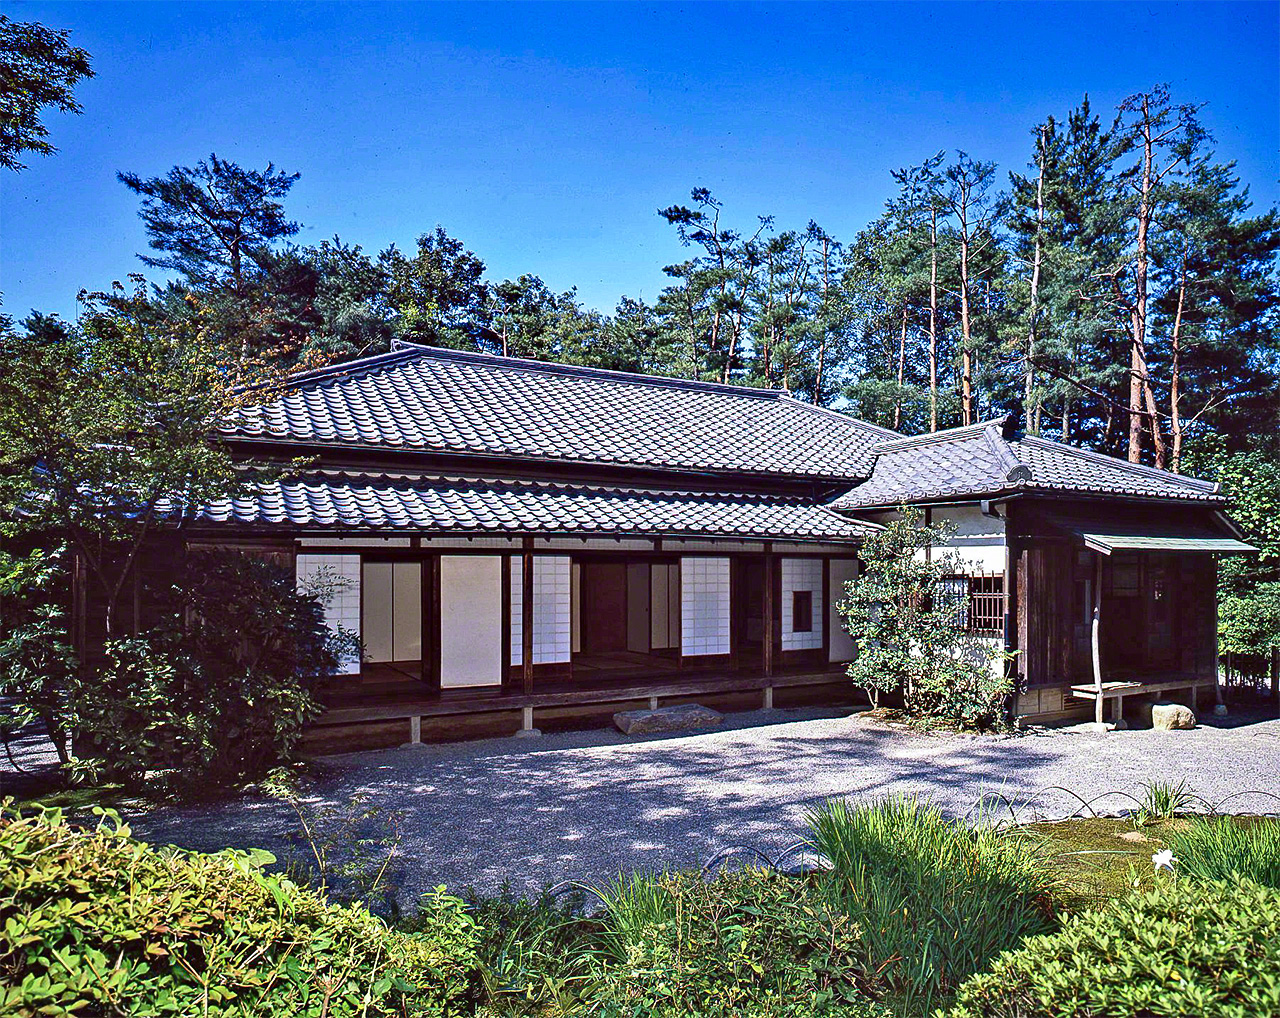 المبنى الذي عاش فيه موري أوغاي وناتسومى سوسيكي، والذي تم بناؤه في عام 1887 بطوكيو.